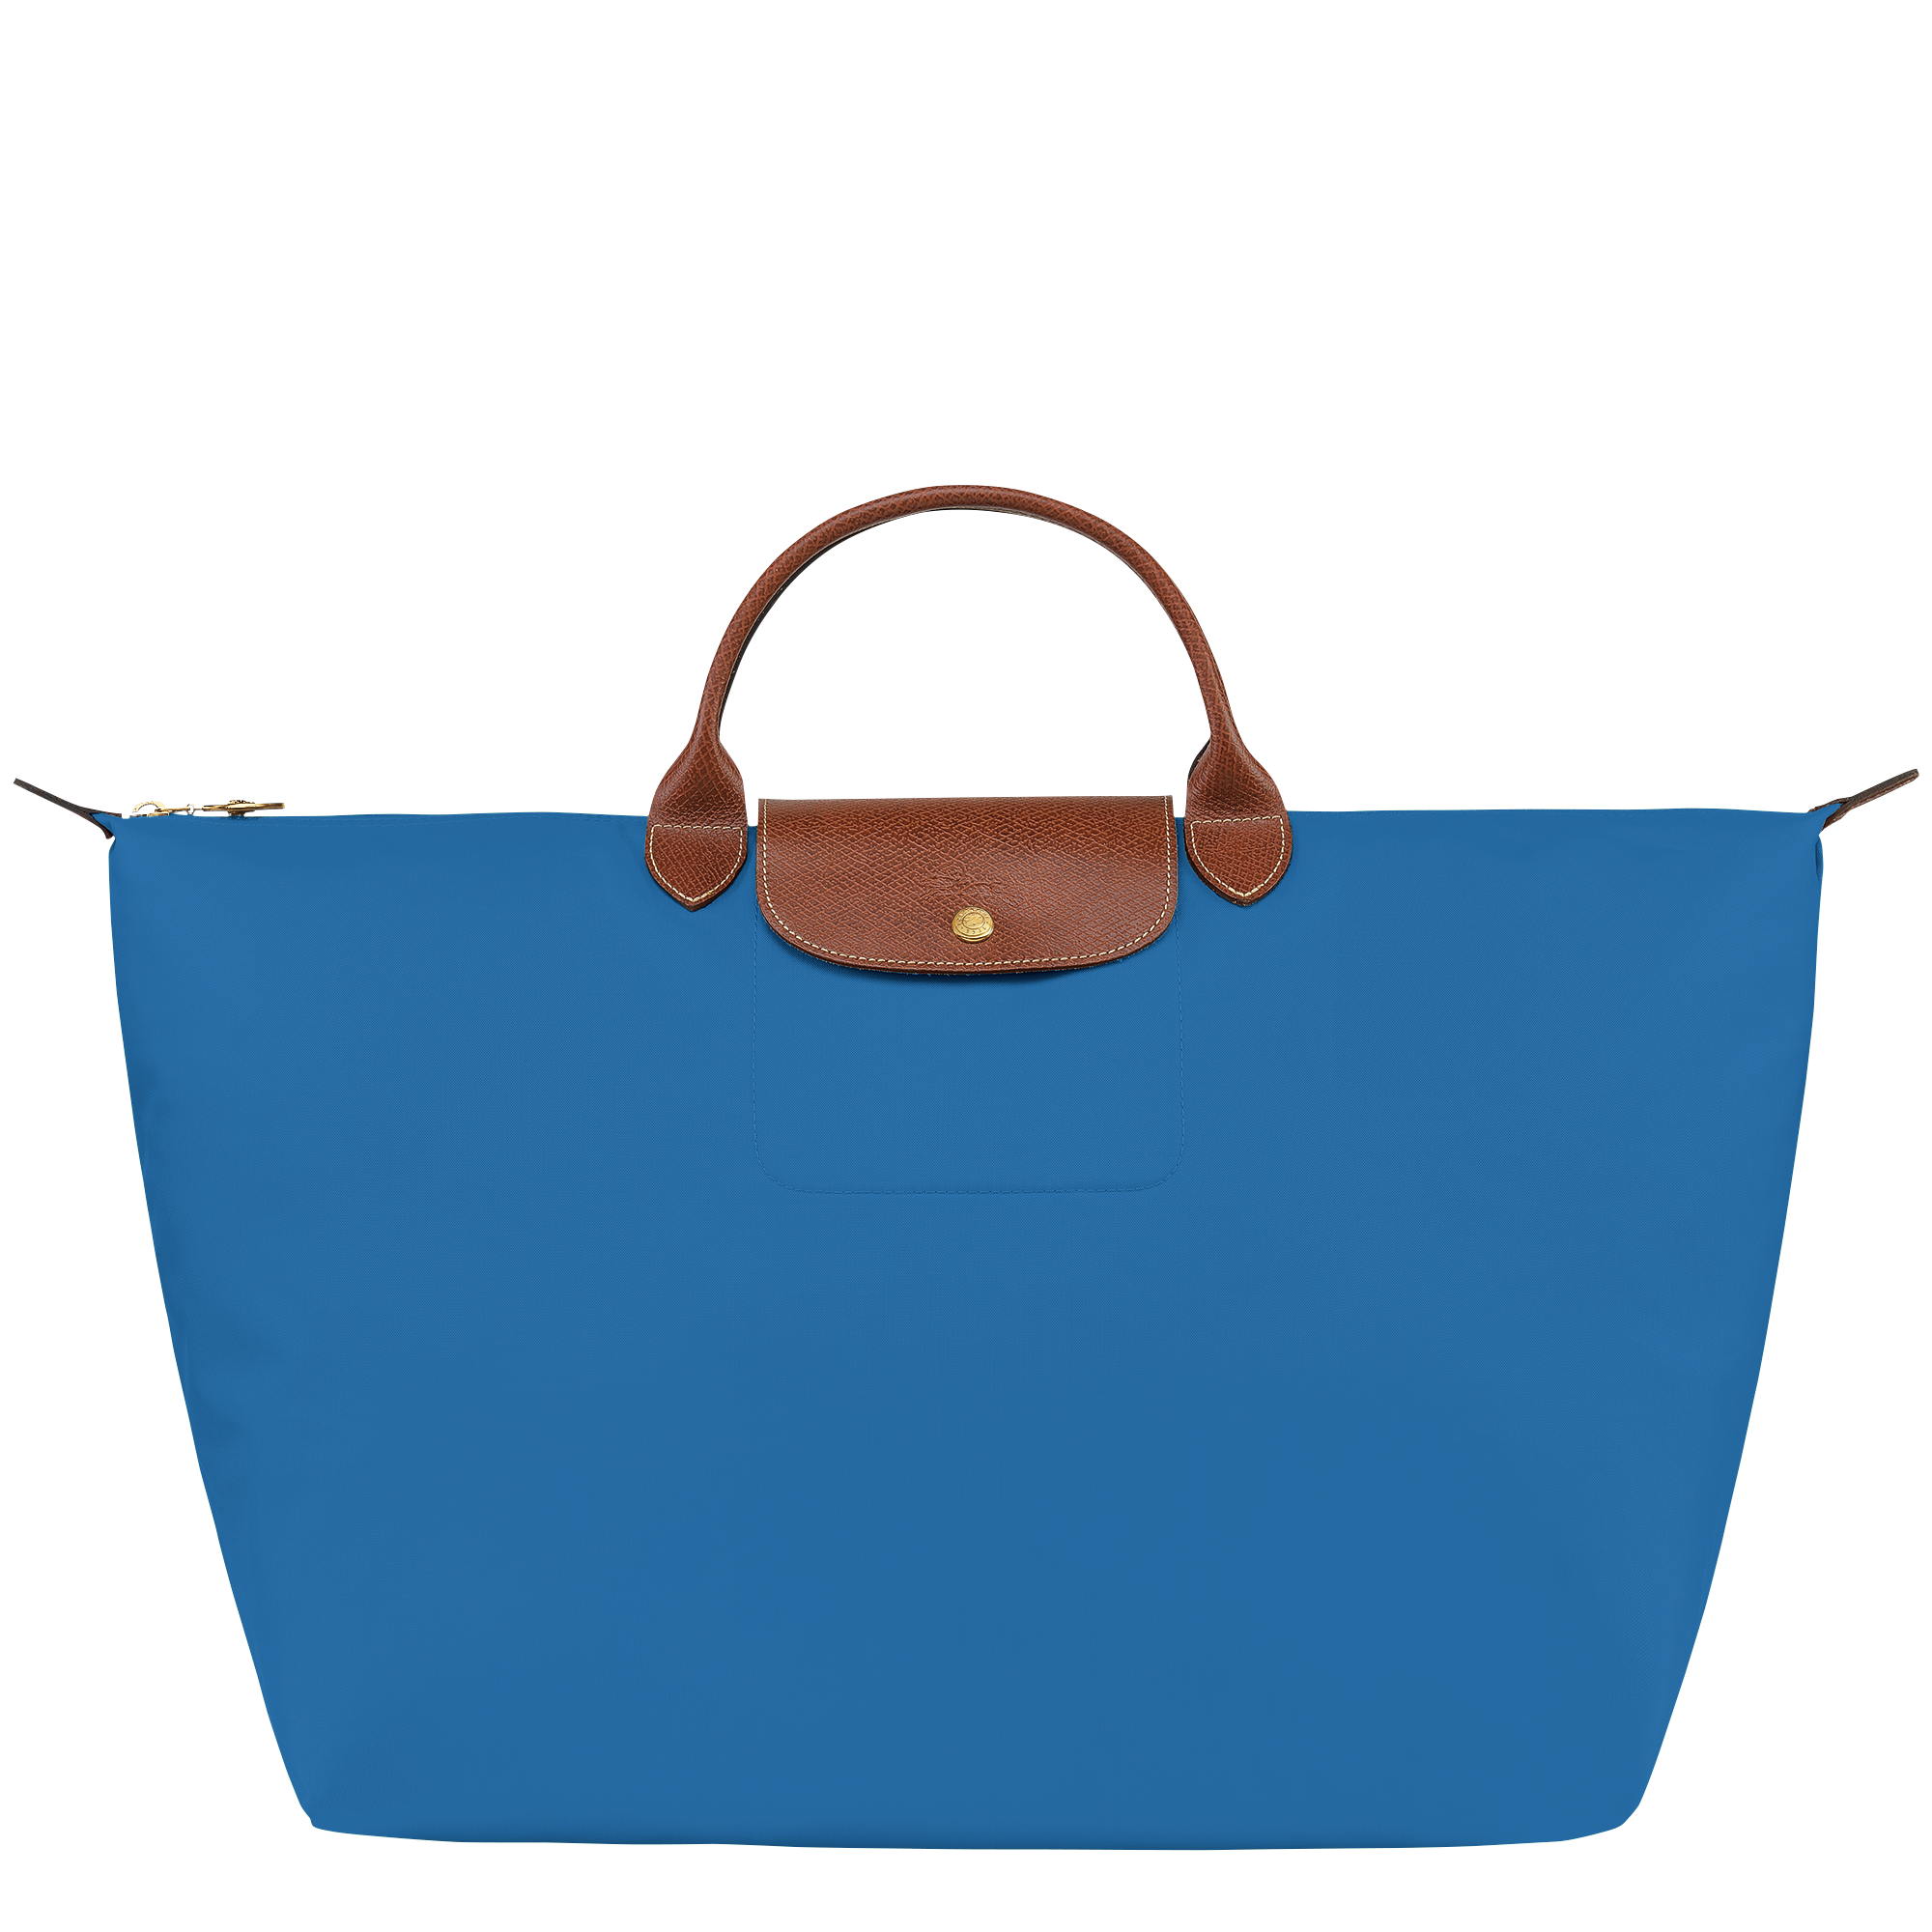 Le Pliage Original Travel bag S, Cobalt